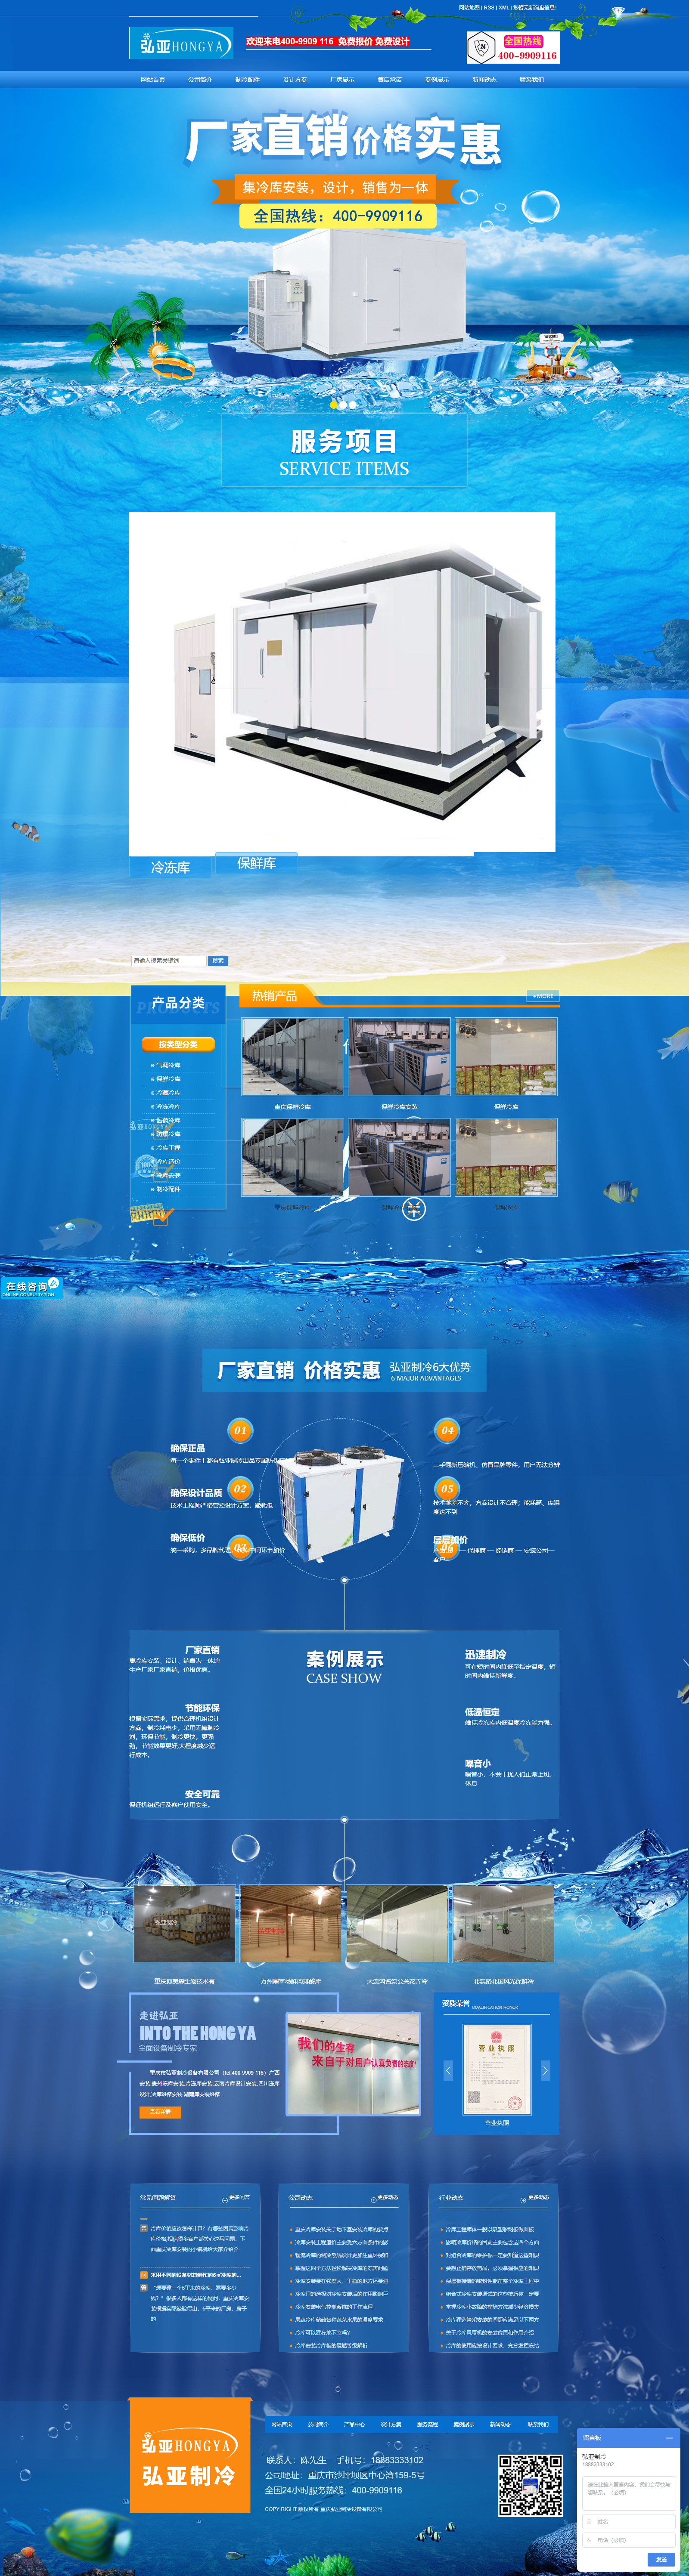 重庆市弘亚制冷设备有限公司网站案例